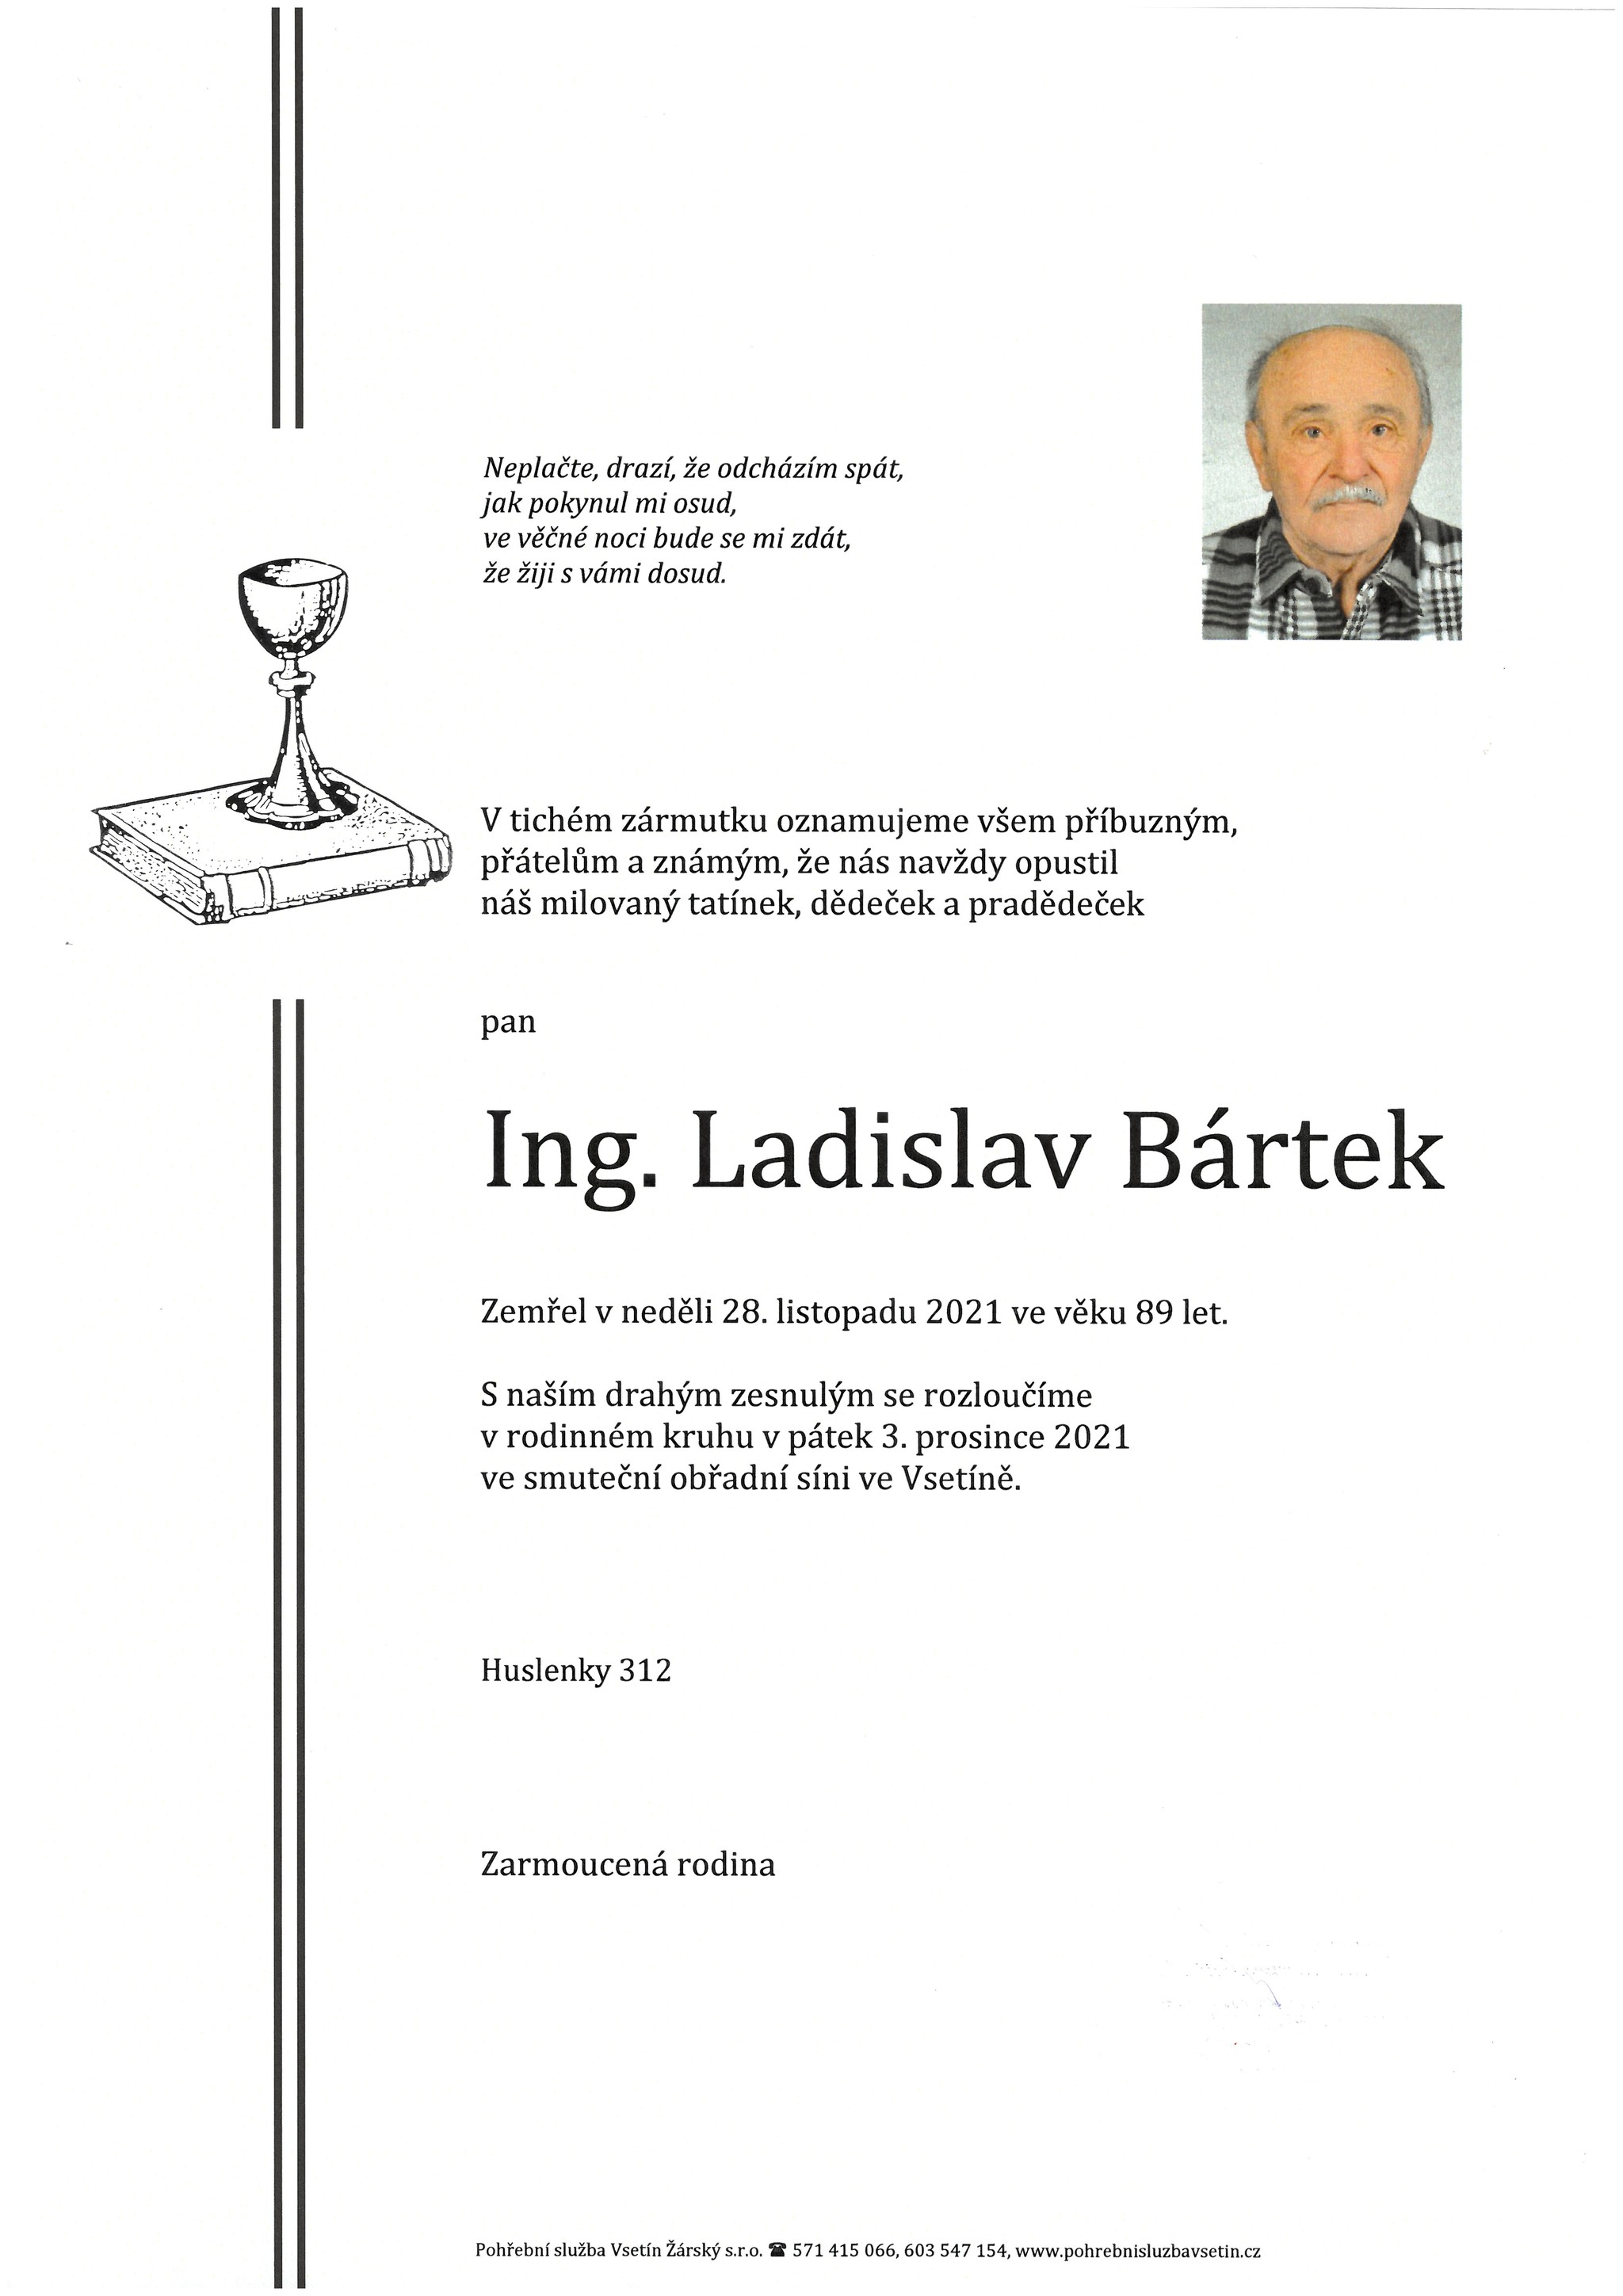 Ing. Ladislav Bártek